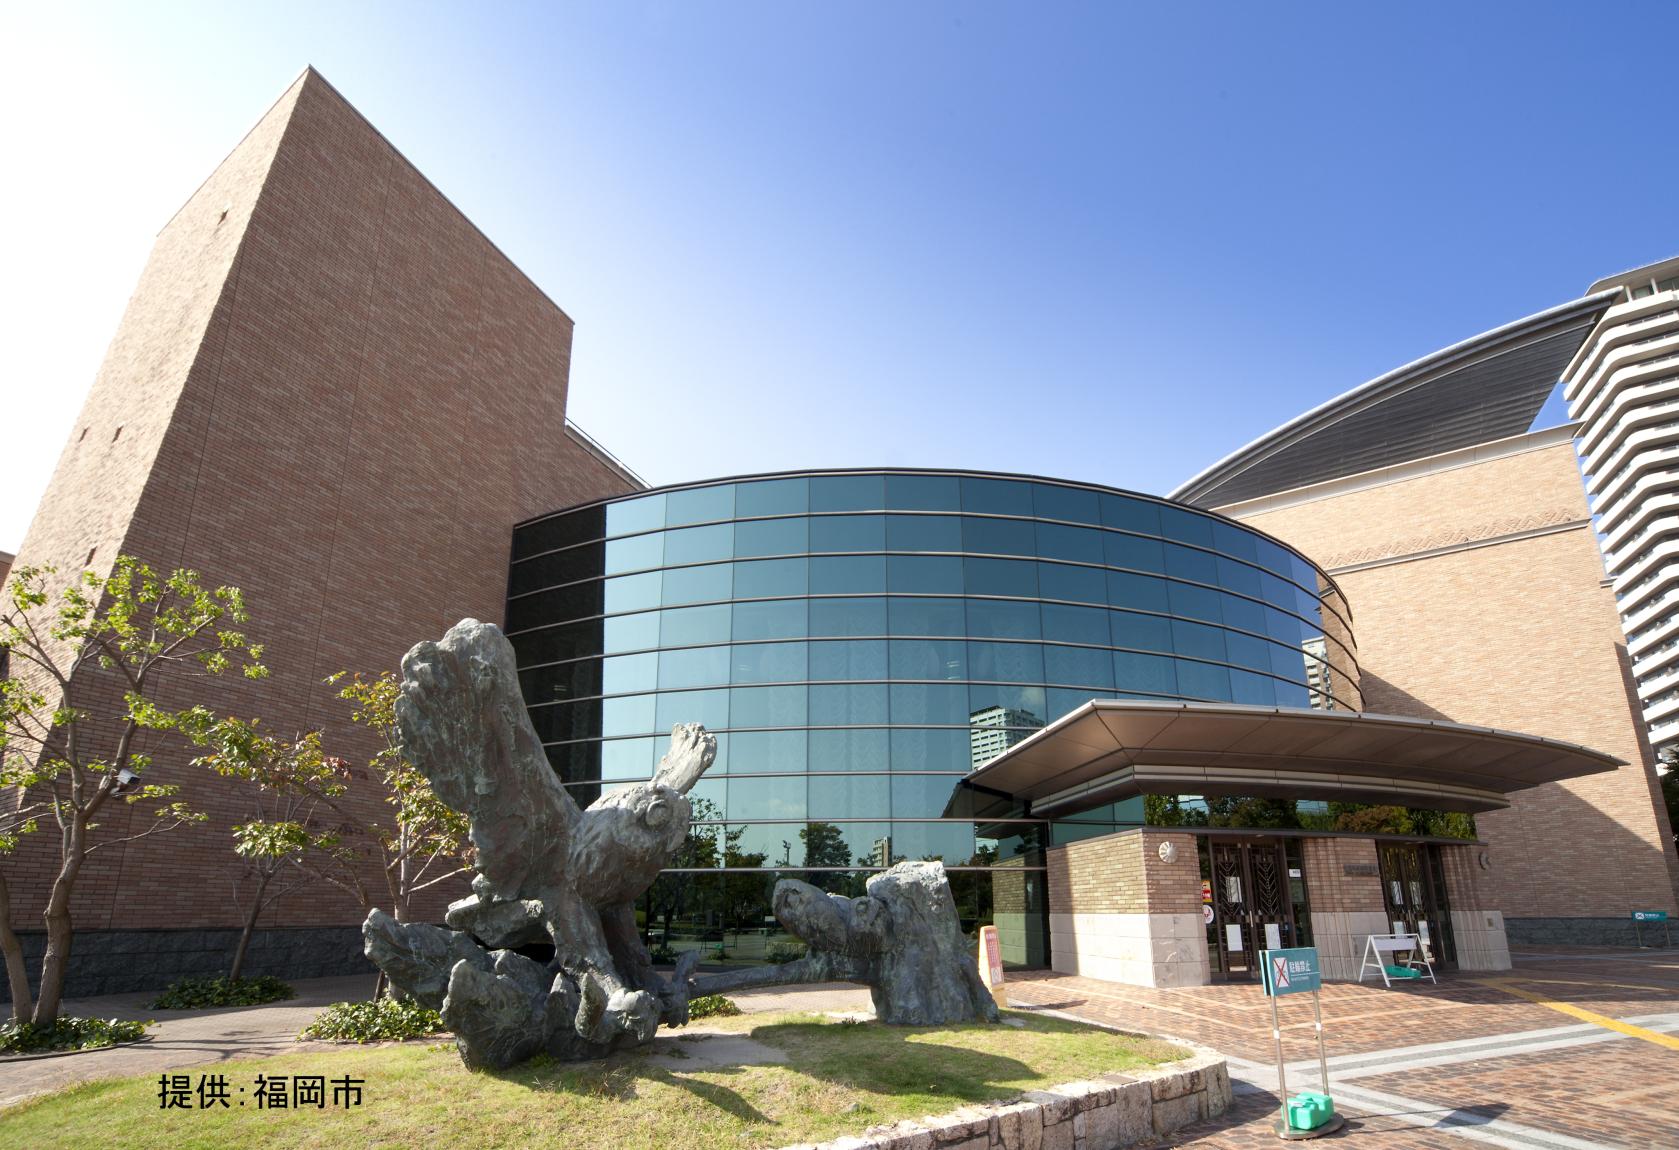 The Fukuoka City Public Library